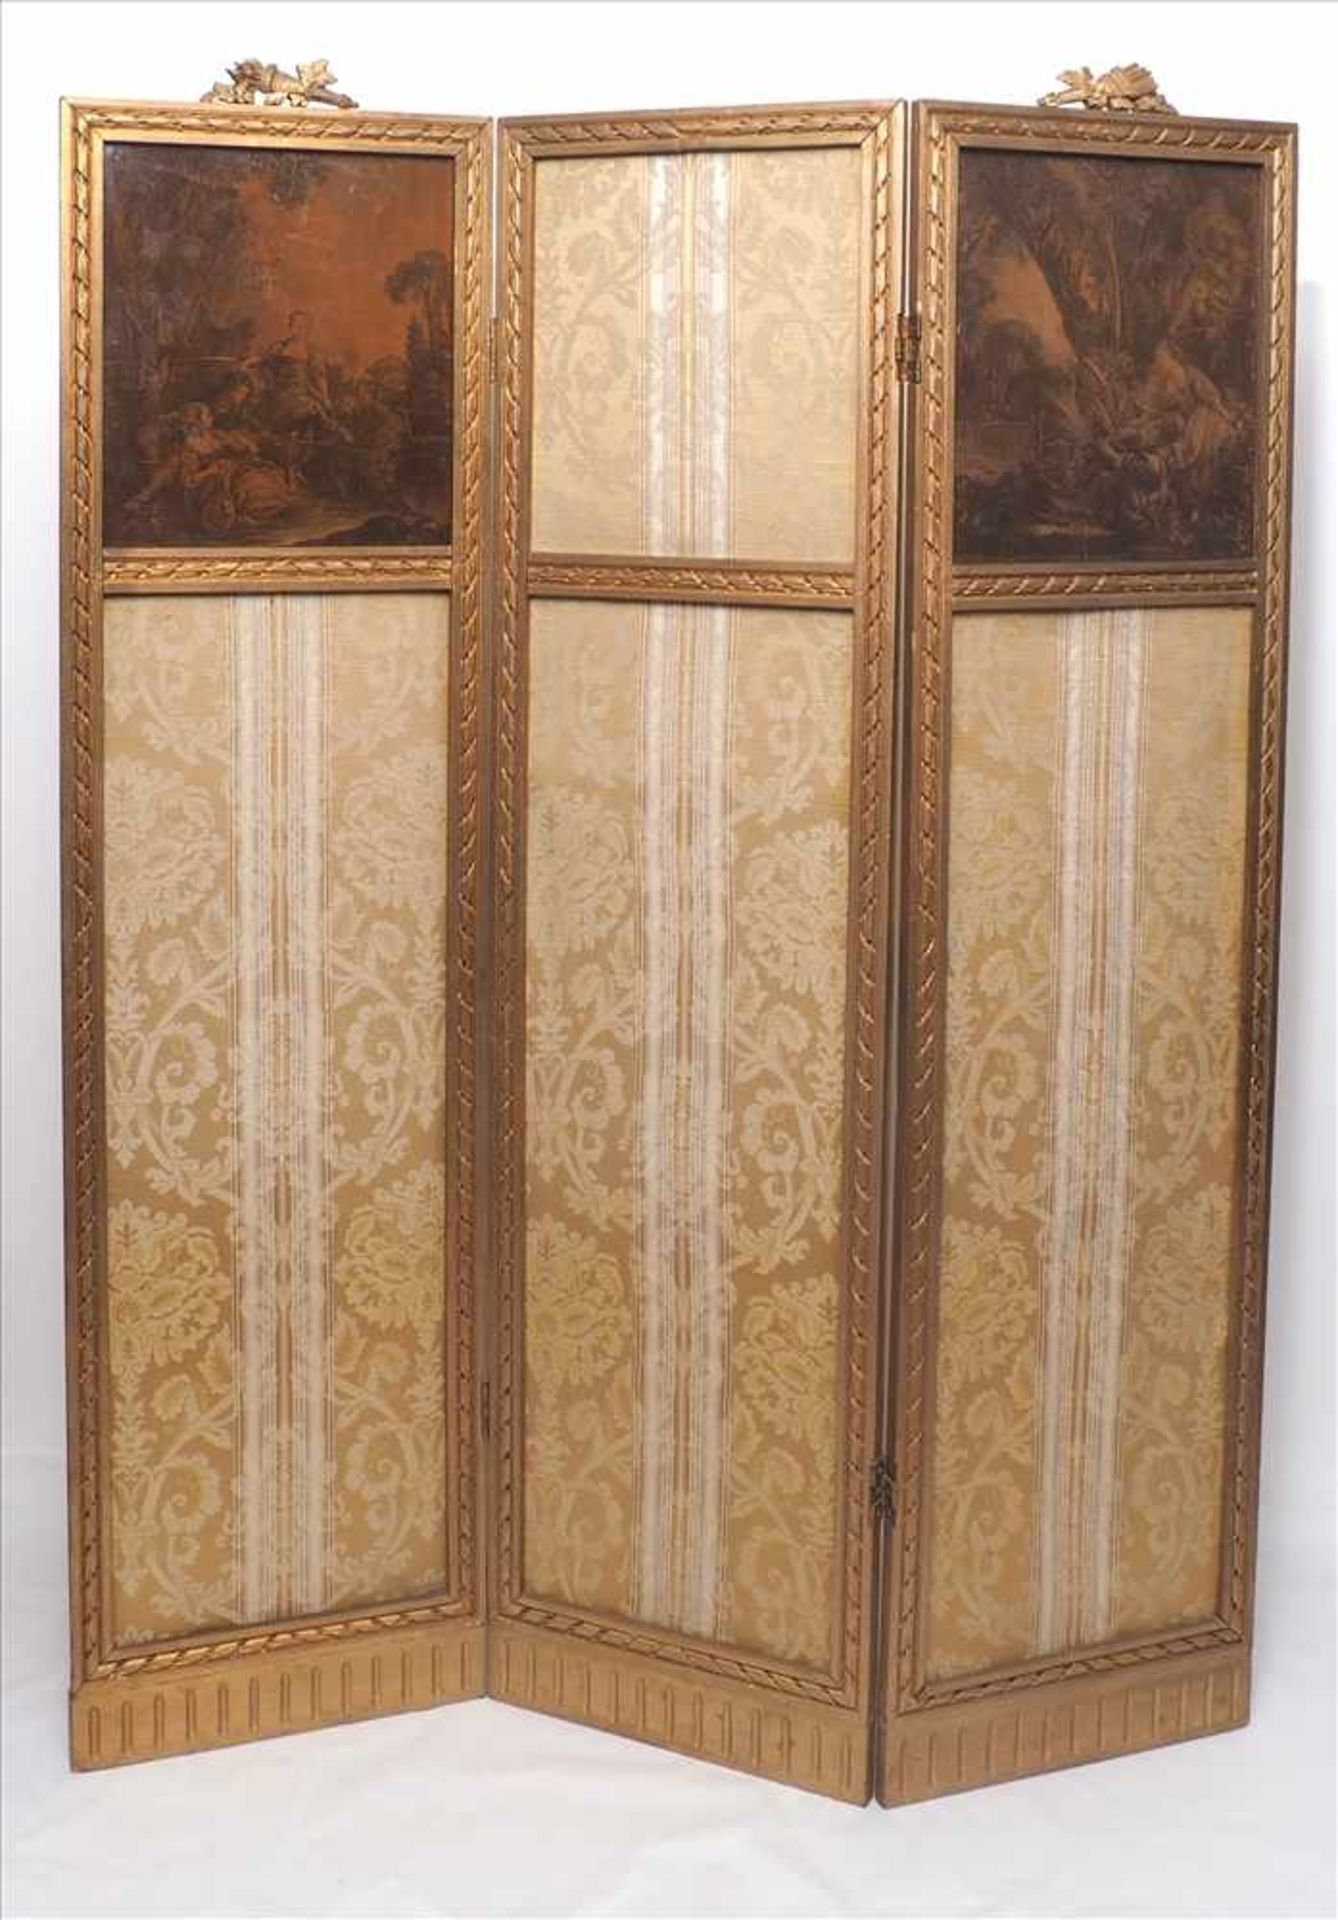 ParaventFrankreich, Louis-Seize um 1900. Dreiteilig. Holz, bronziert und edler Bezugstoff. Oben zwei